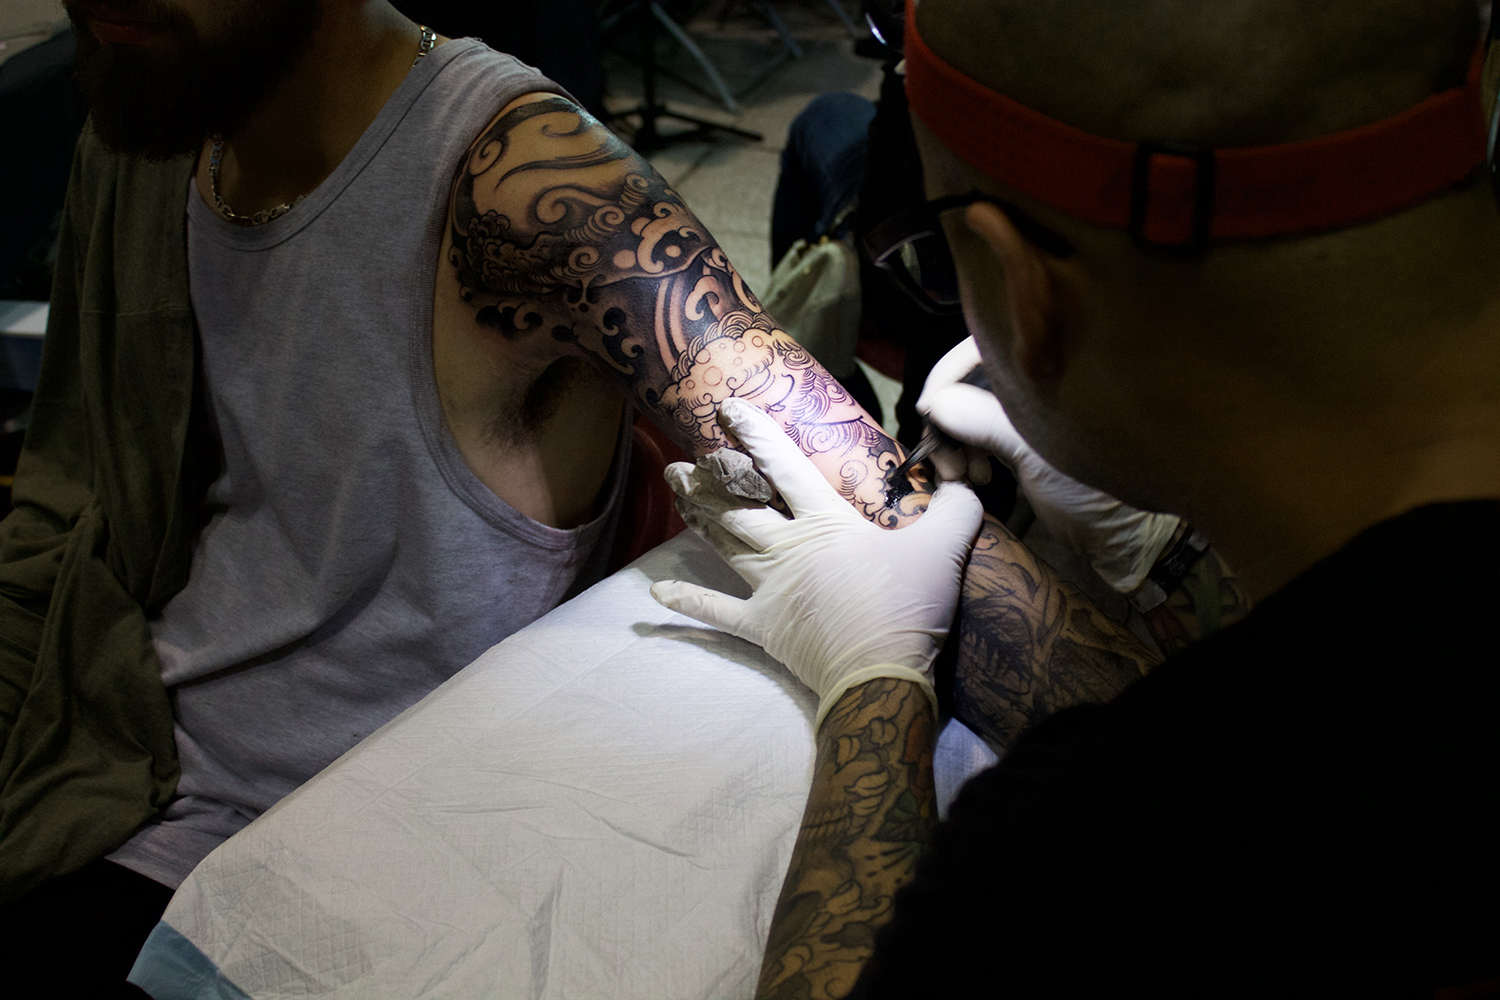 Art Tattoo Montreal Show, Fibs tattooing